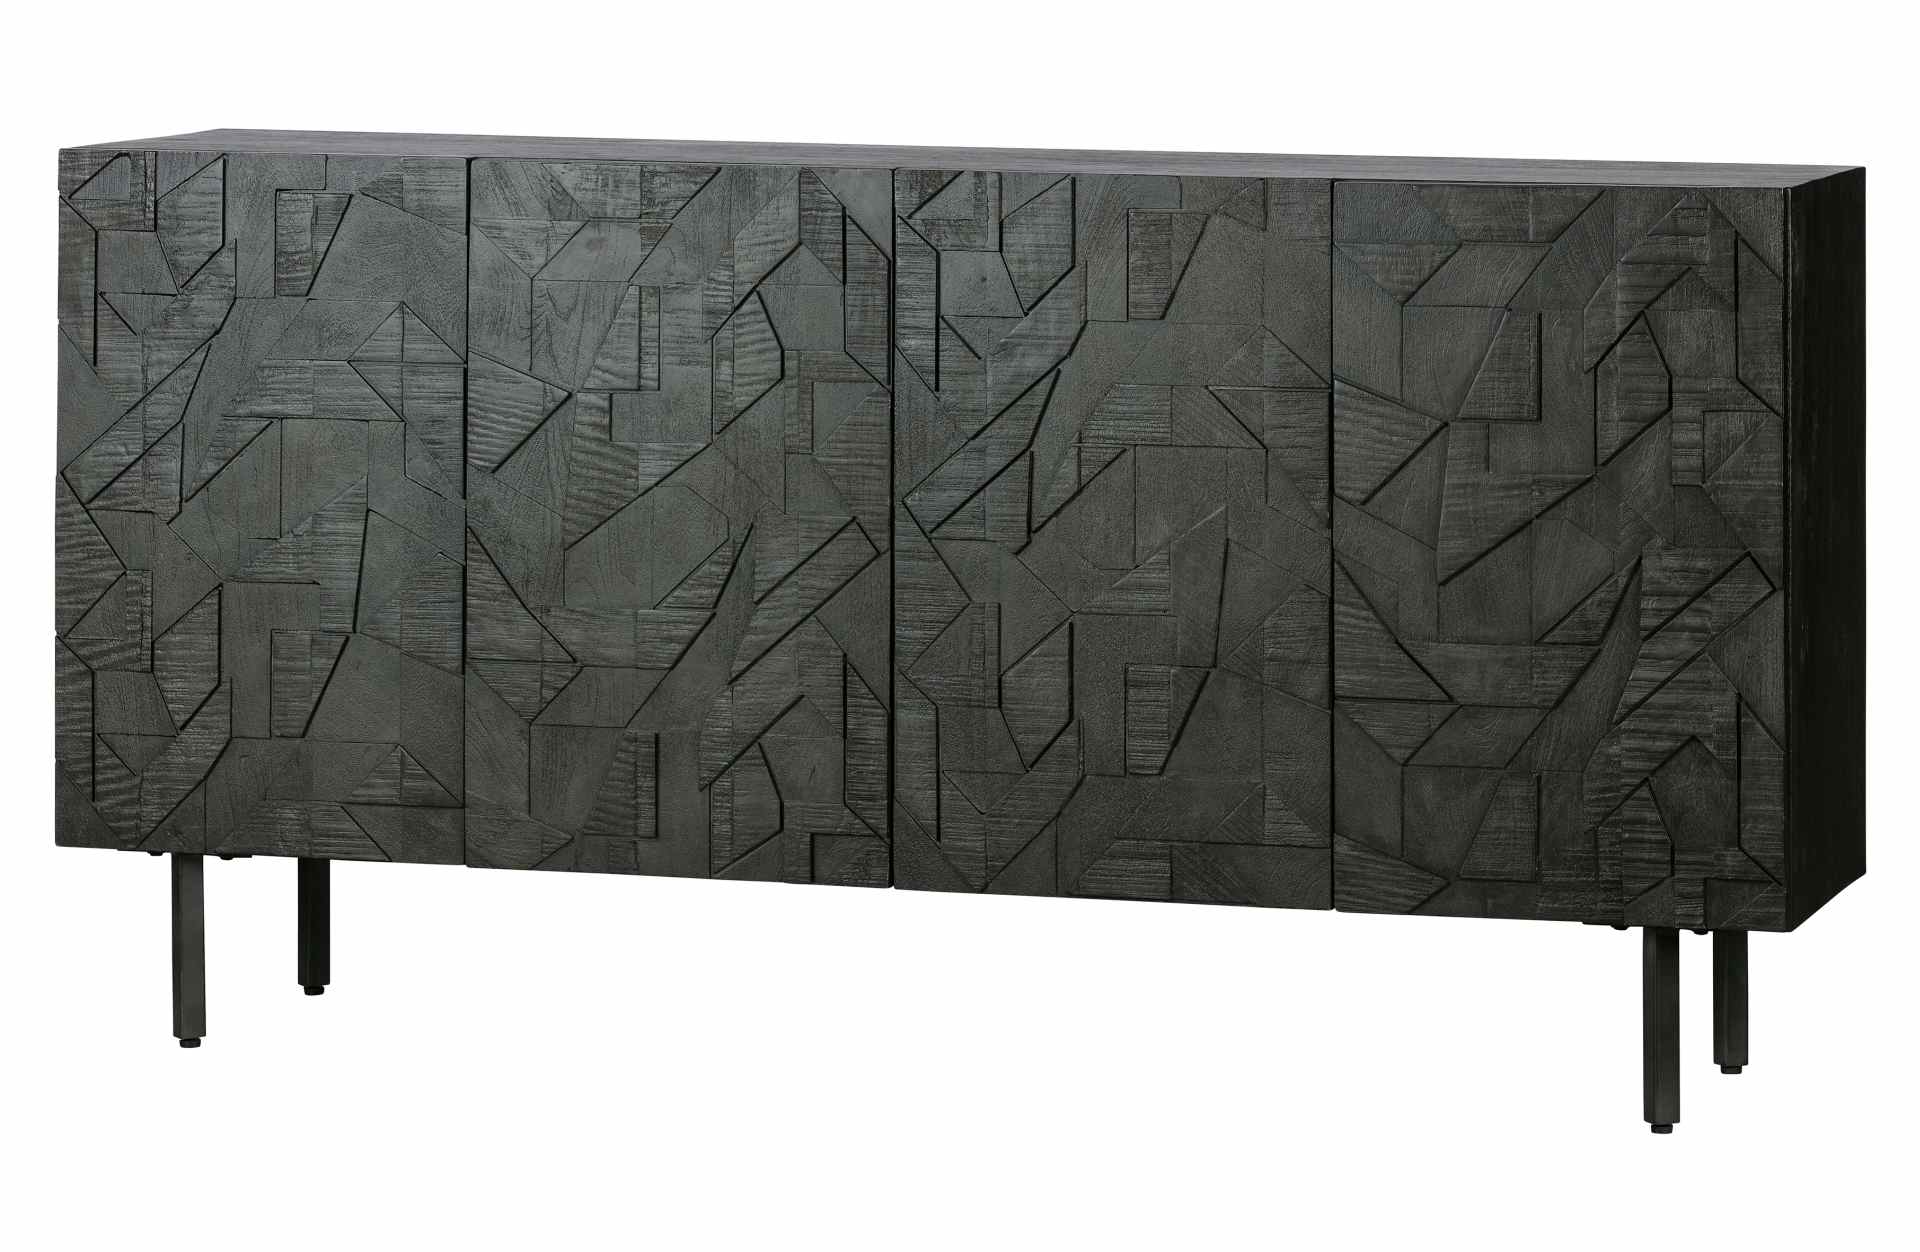 Das Sideboard Counter wurde aus Mangoholz gefertigt, welches einen schwarzen Farbton besitzt. Das Sideboard besitzt vier Türen mit Fächern im inneren für ausreichend Stauraum.